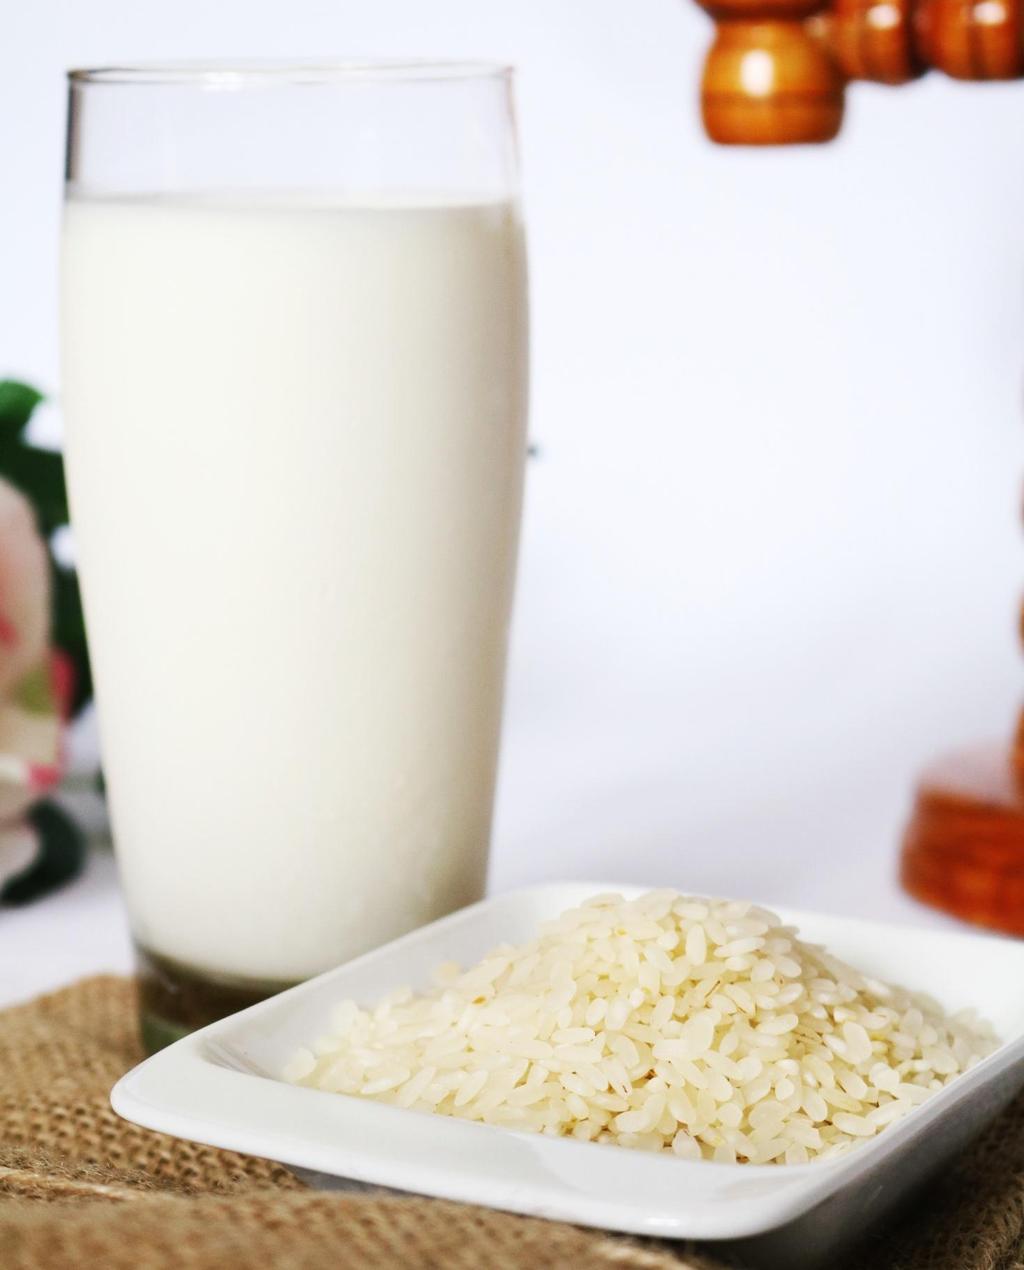 Оризово мляко Оризовото мляко е отличен заместител на обикновеното краве мляко в дните на пости. Не е маслено и така може да се използва и за приготвяне на различни ястия и десерти.